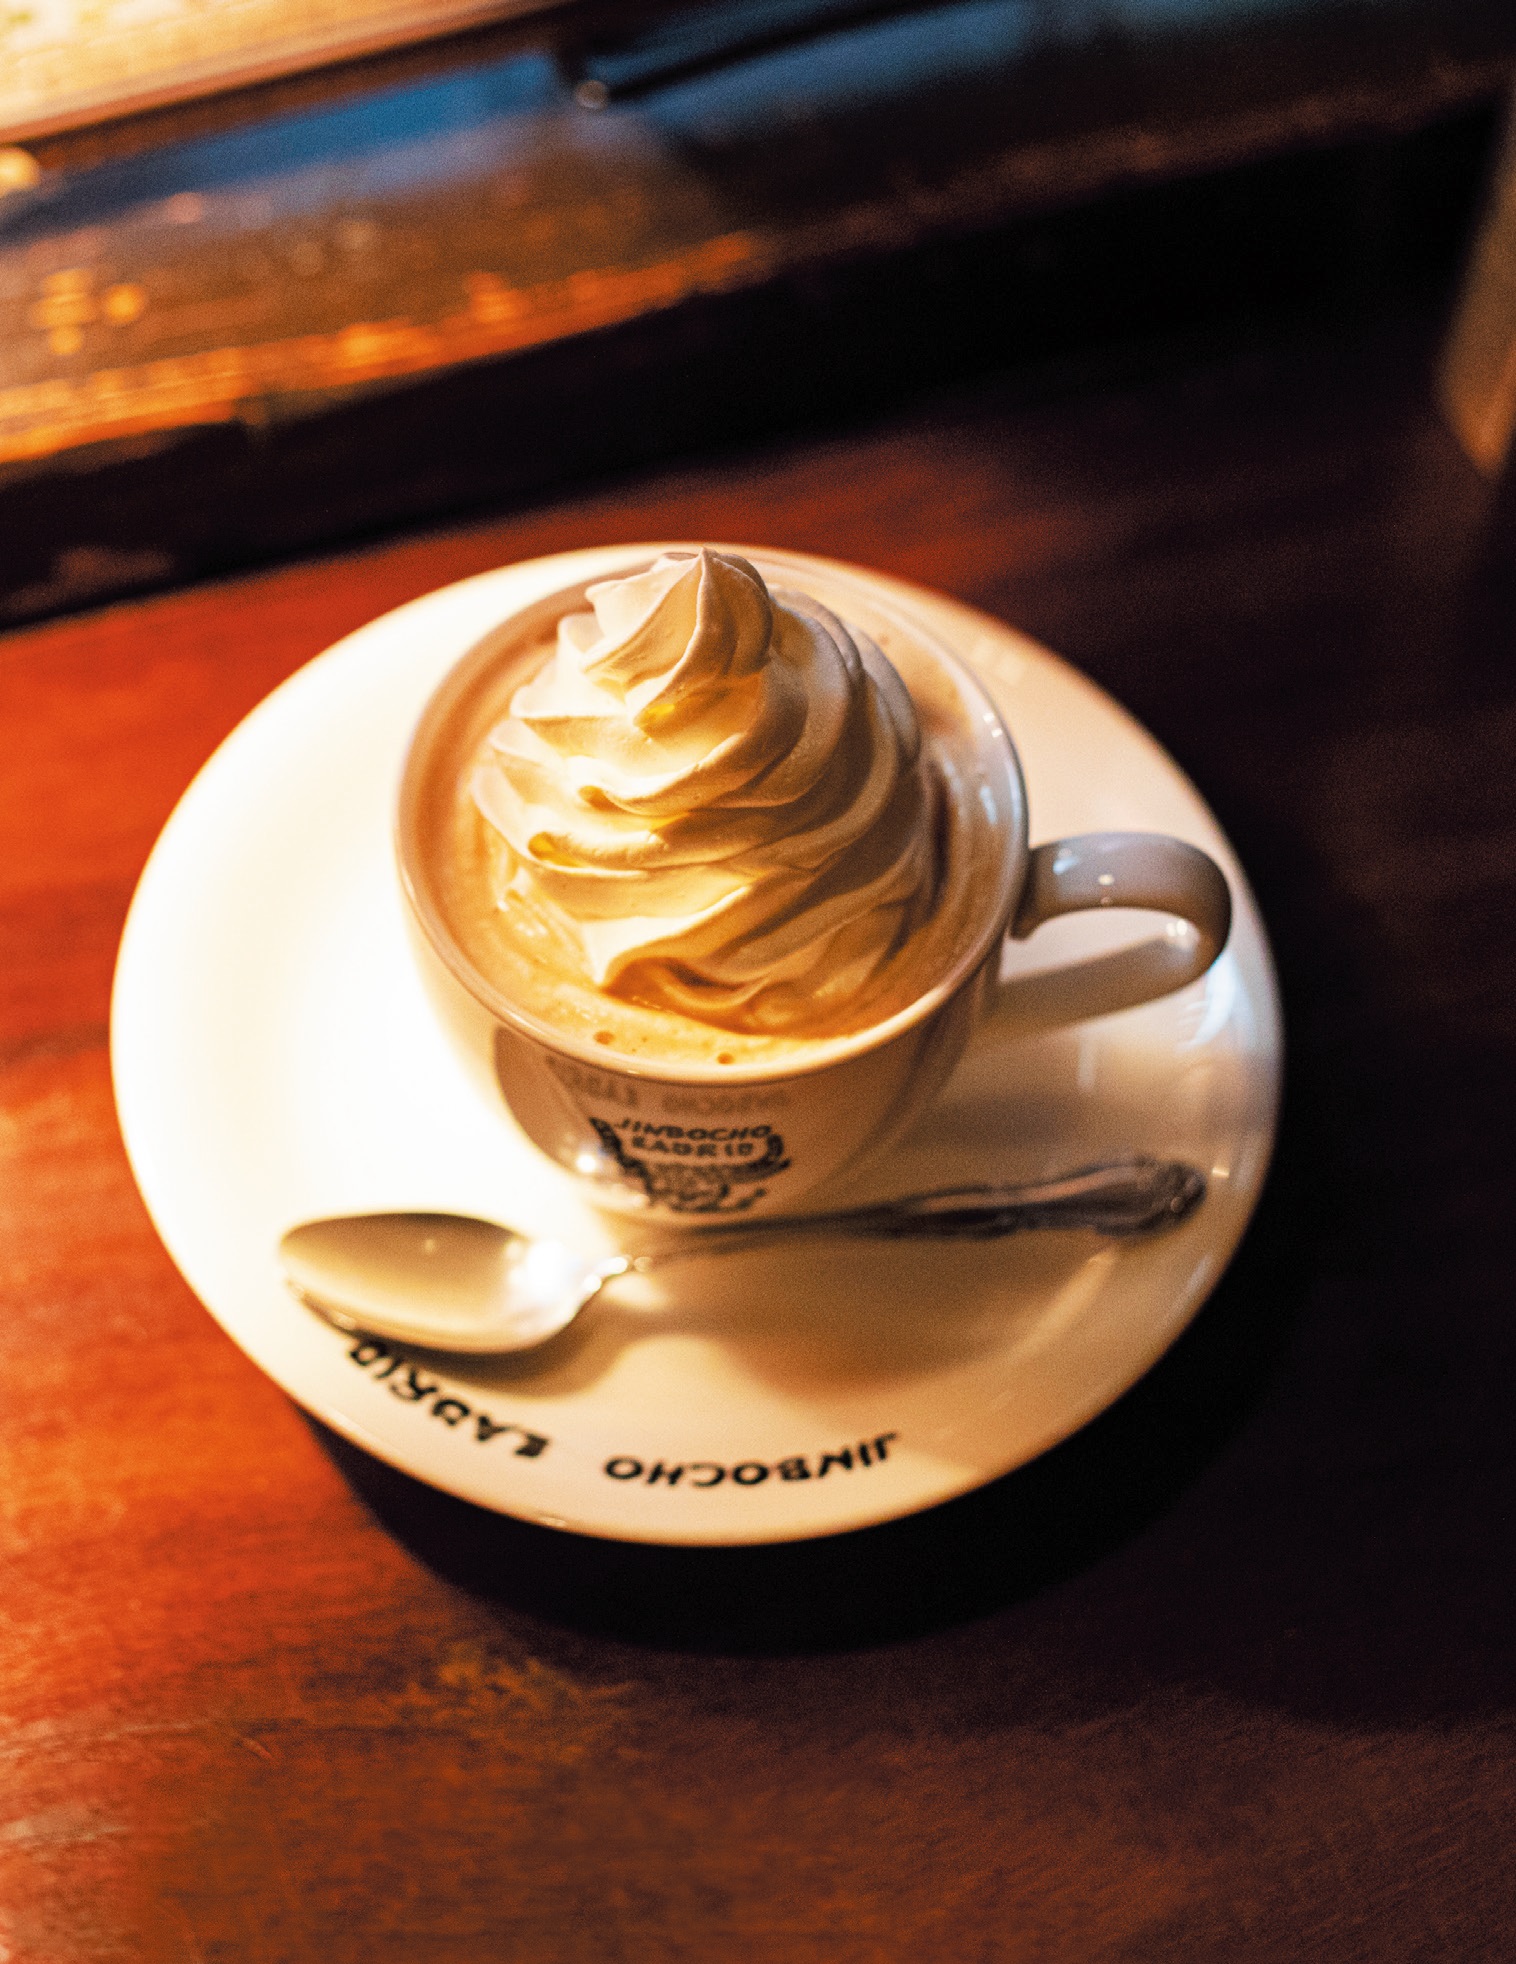 ウィンナーコーヒー「元祖の店」も！ 歴史と思いがつまった“レトロ喫茶”4選